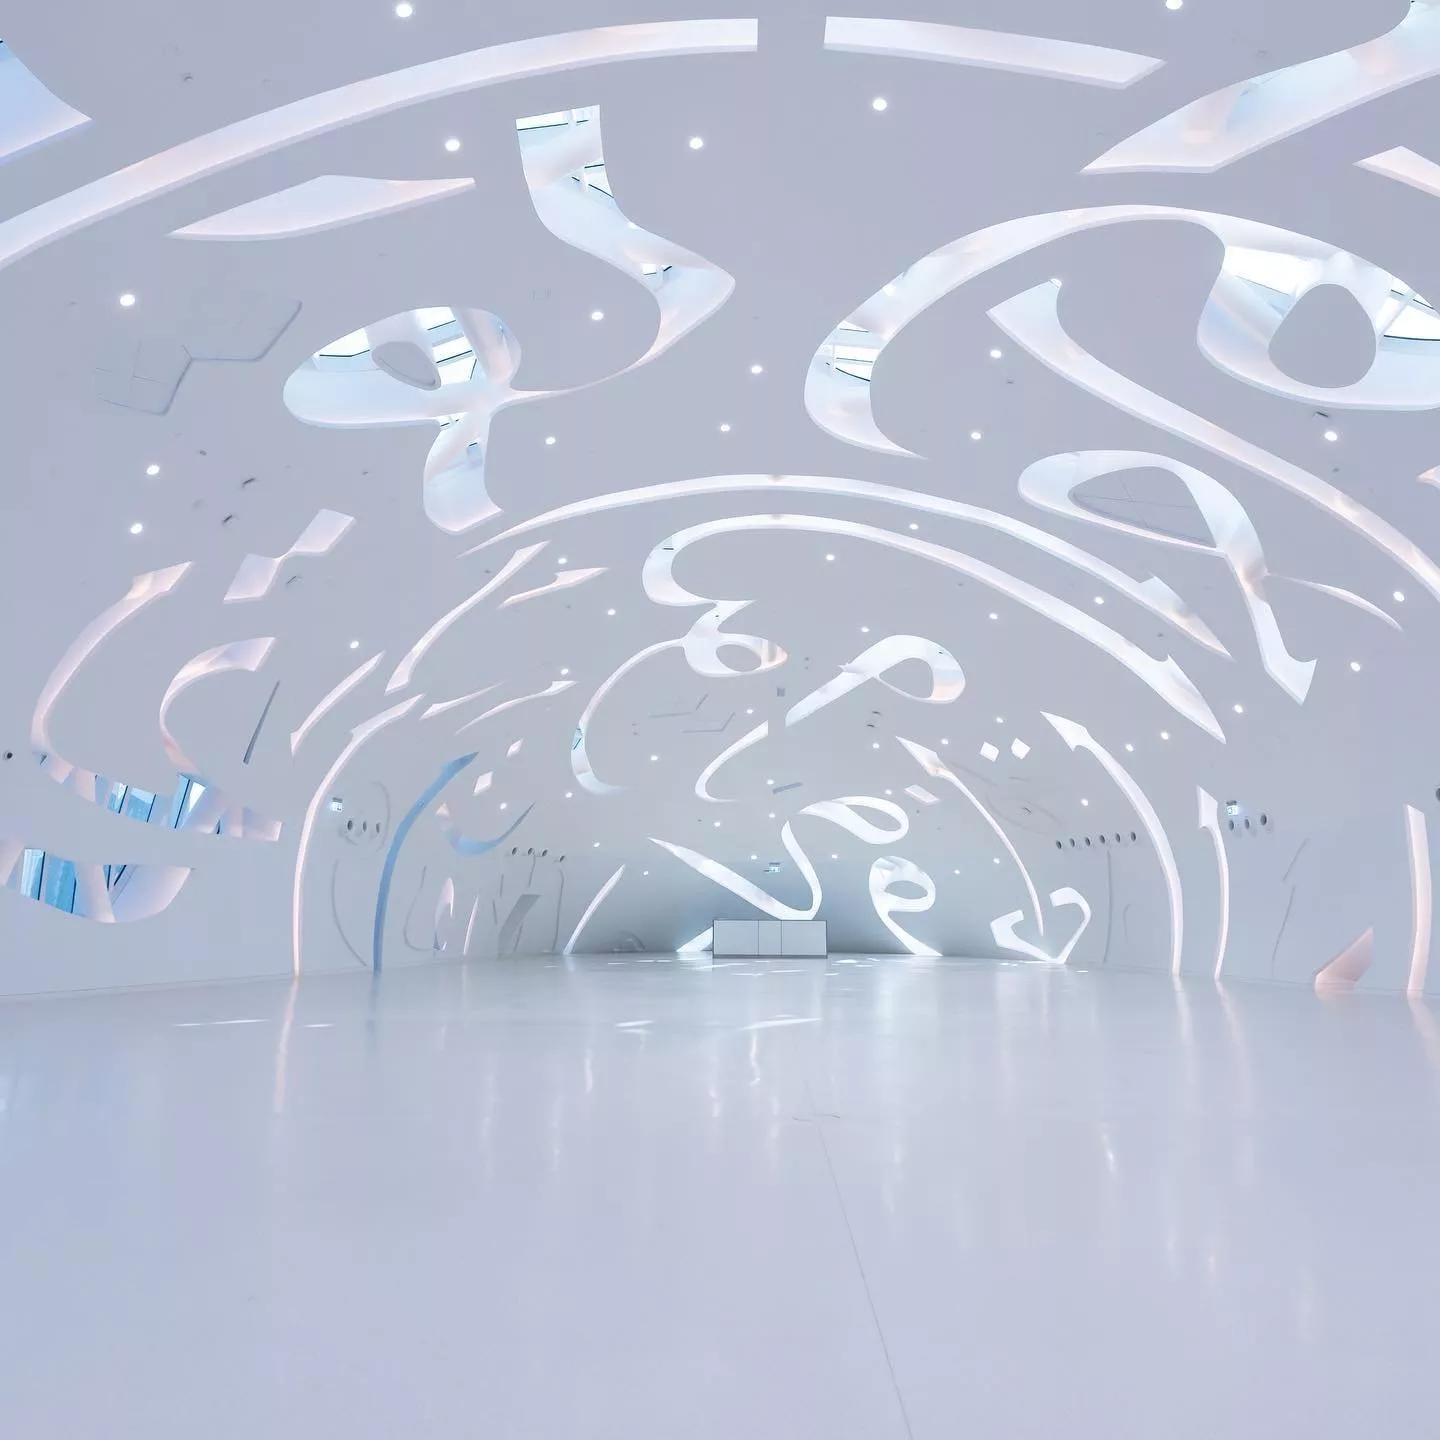 بالفيديو، هبوط مركبة جوية على متحف المستقبل في دبي يثير ضجة على السوشيل ميديا